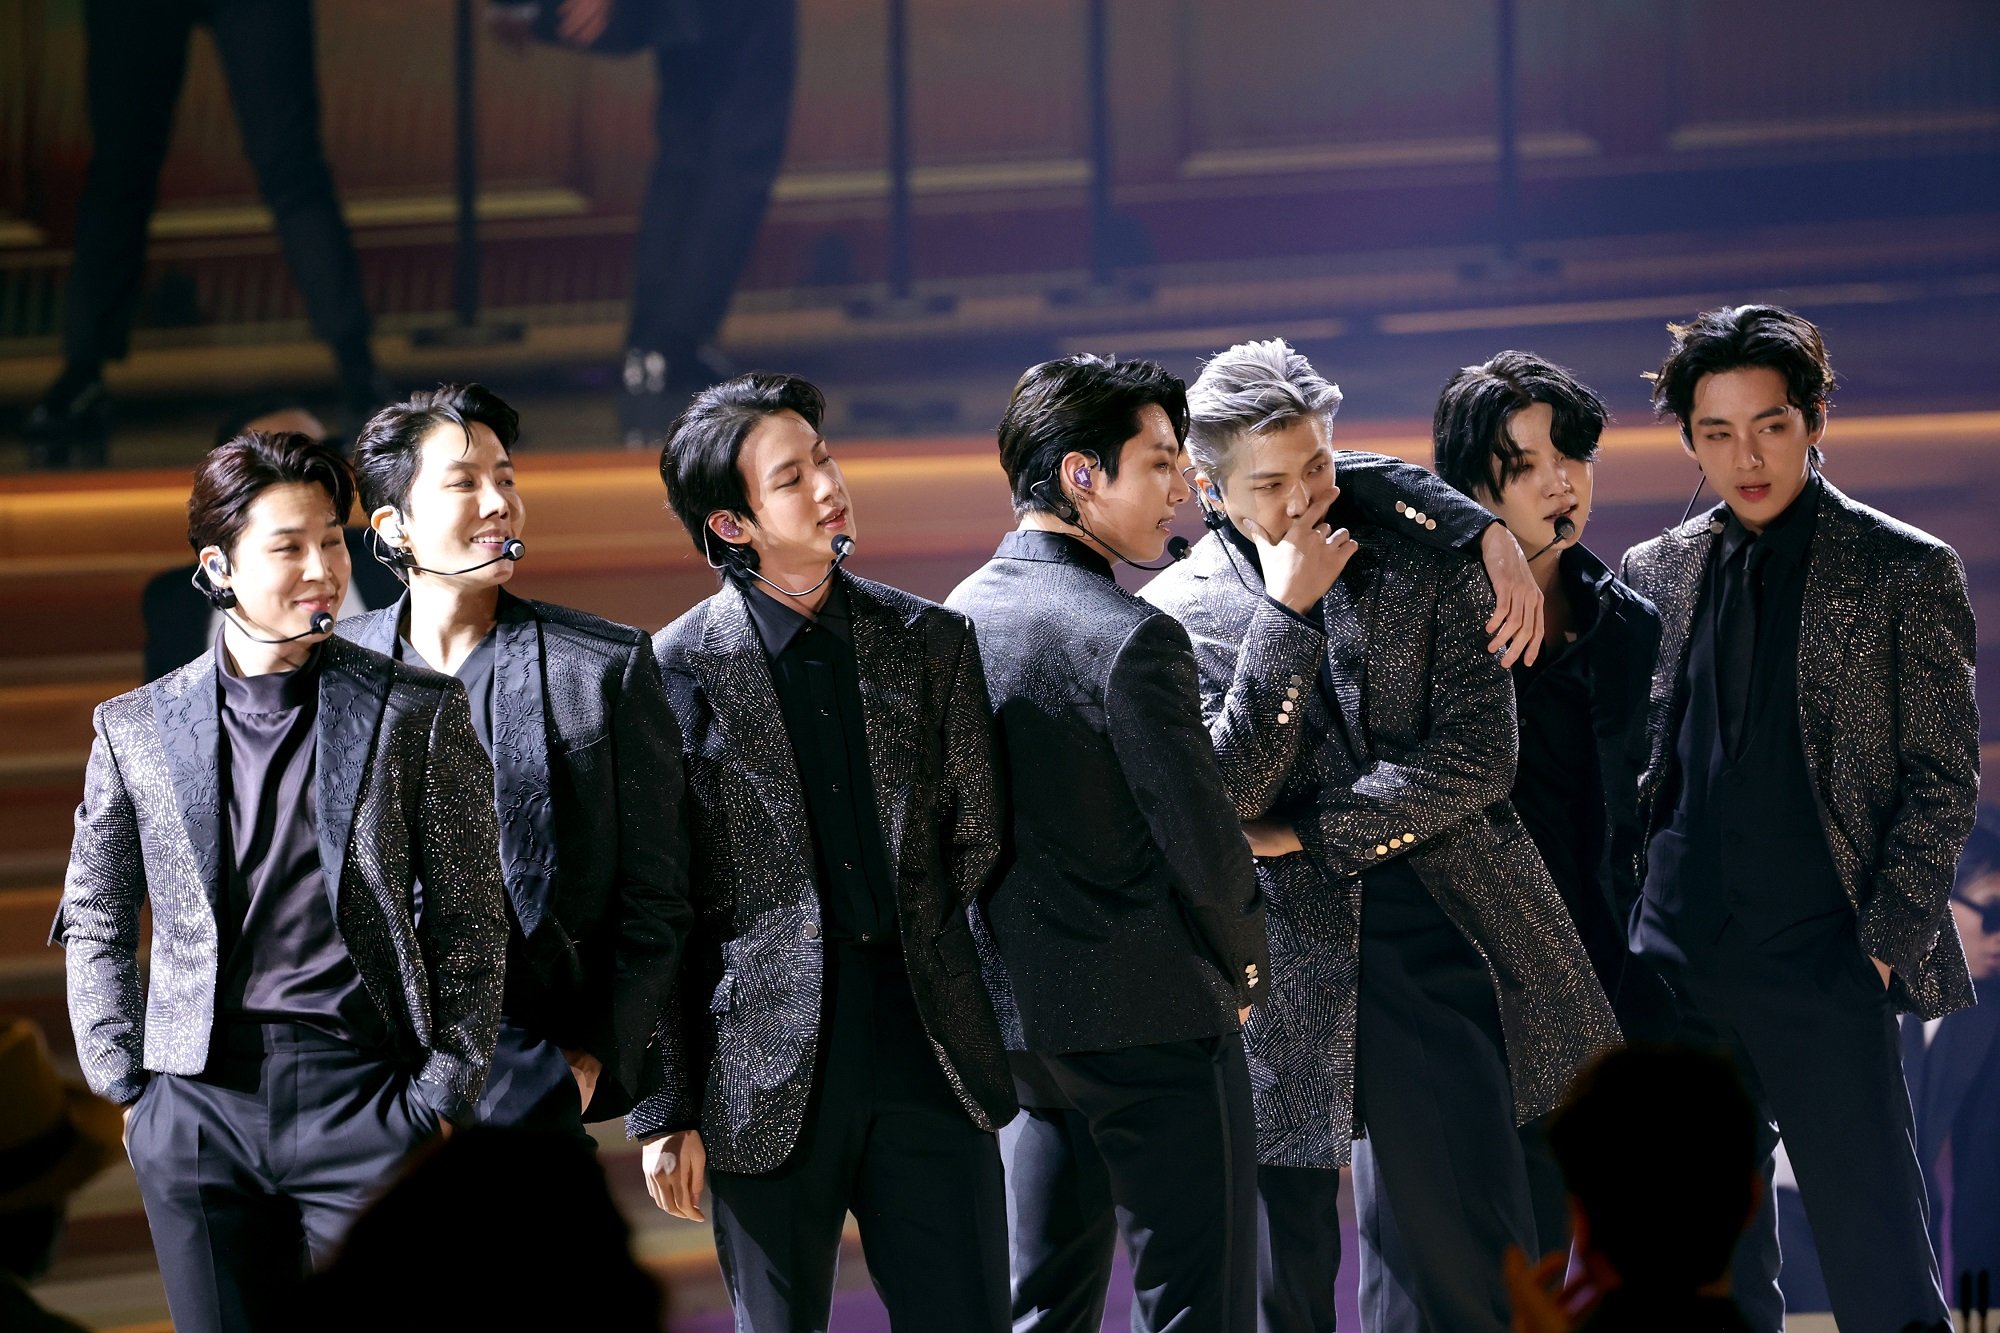 Jimin, J-Hope, Jin, Jungkook, RM, Suga, and V of BTS perform at the 2022 Grammy Awards